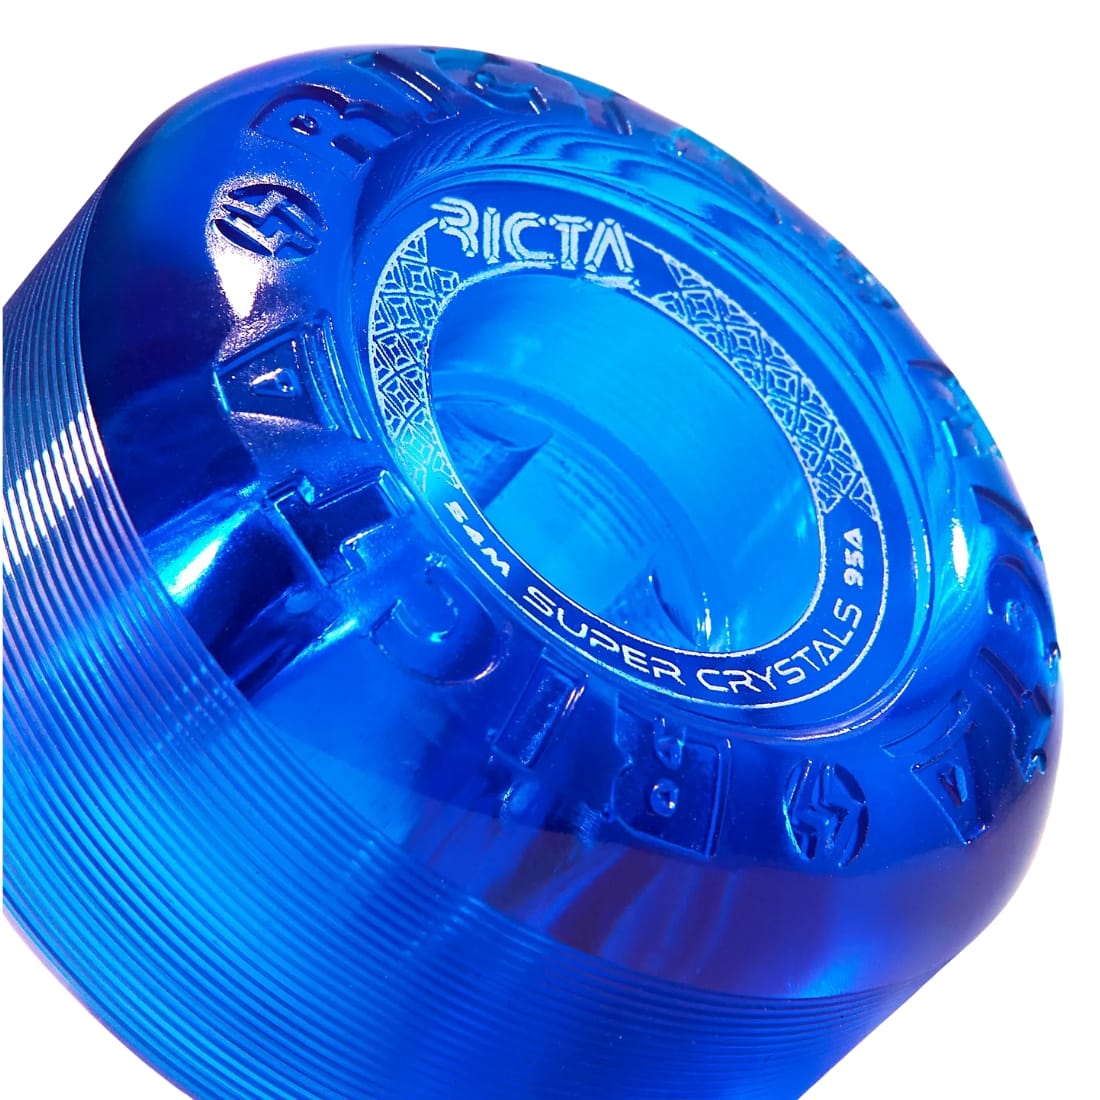 Ricta 54mm Super Crystals Translucent 95A Skateboard Wheels - Assorted - Skateboard Wheels by Ricta 54mm